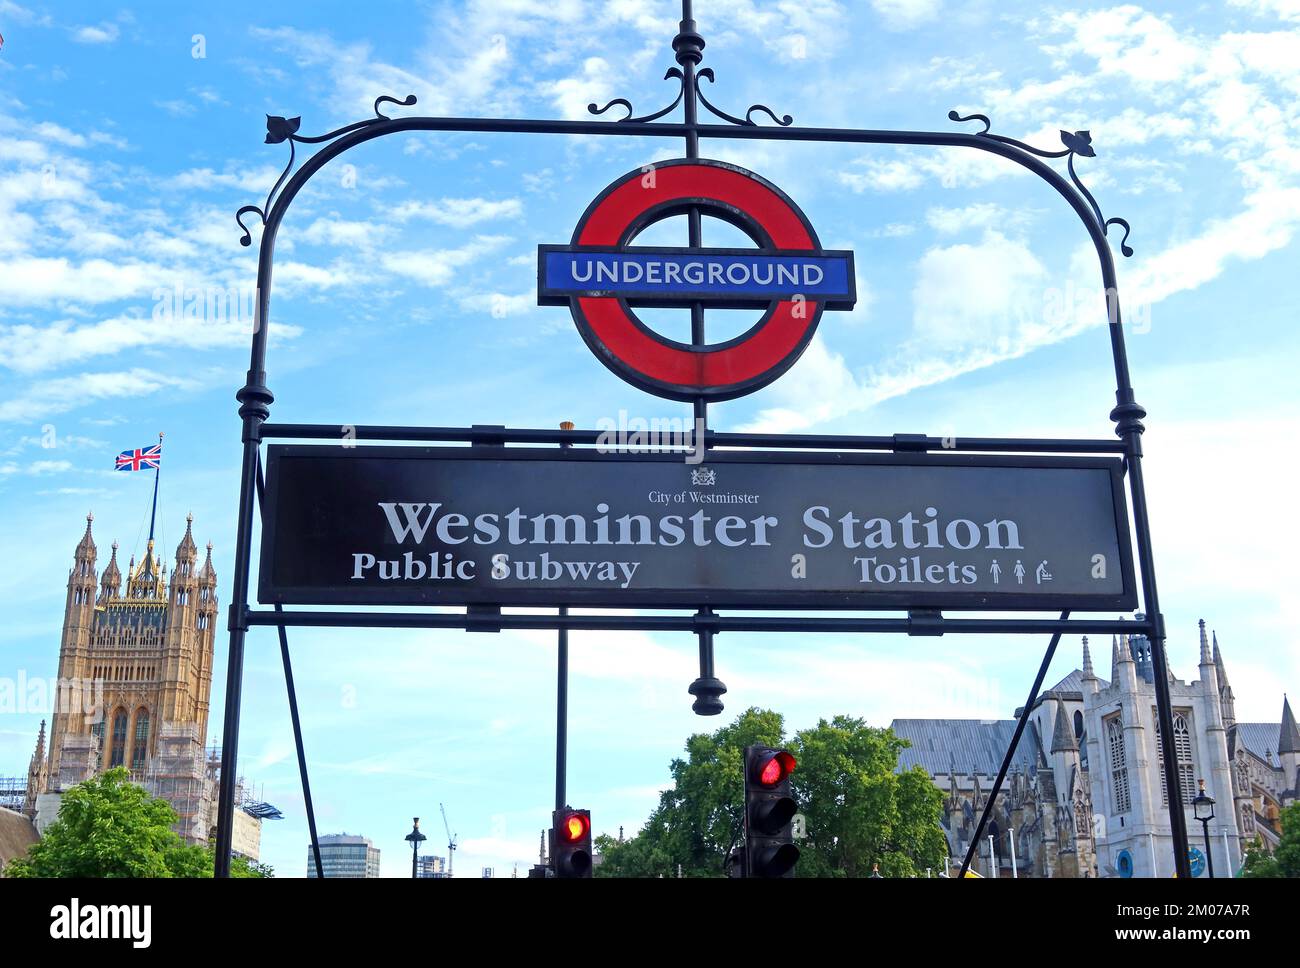 Station de métro Westminster, entrée du métro souterrain et des toilettes, devant le palais de Westminster, chambres du Parlement, Londres, Angleterre, Royaume-Uni, SW1 Banque D'Images